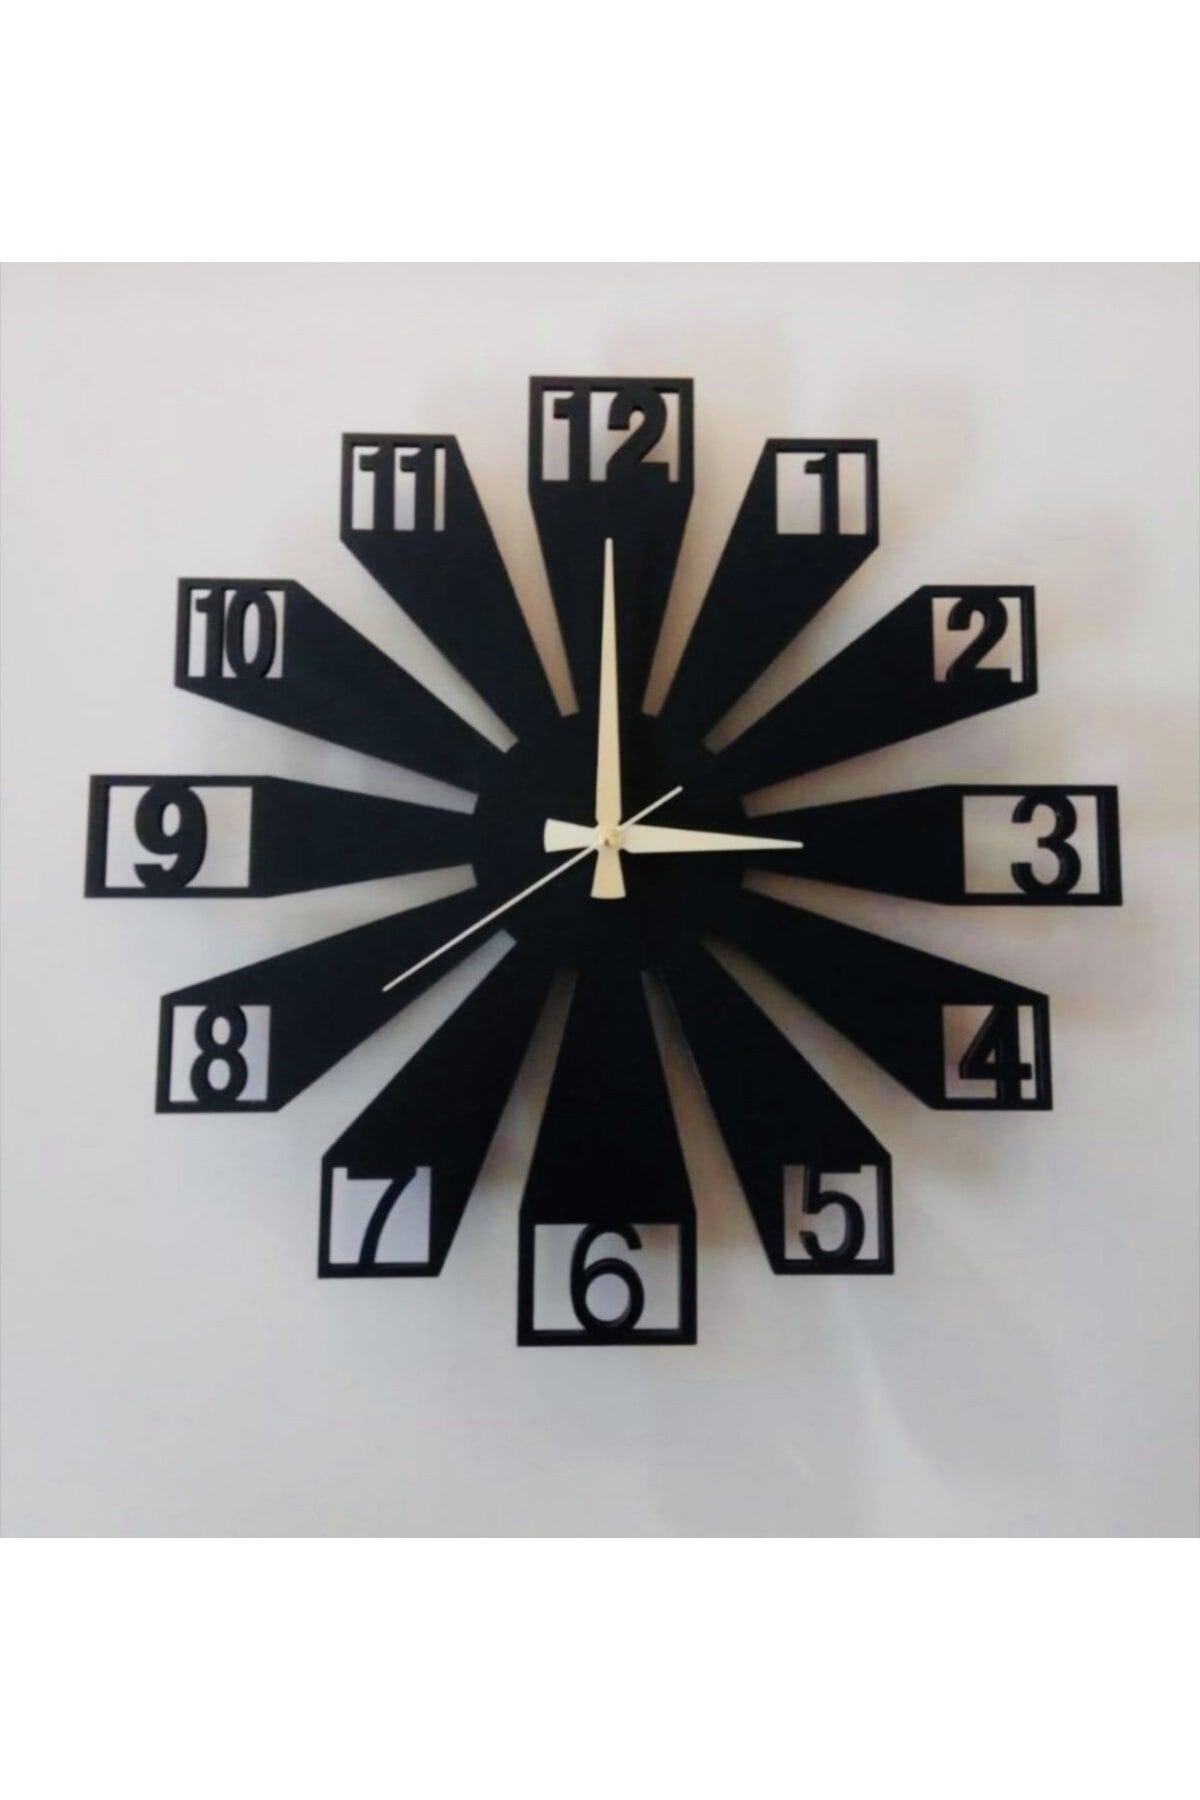 Decorative Wall Clock - Swordslife